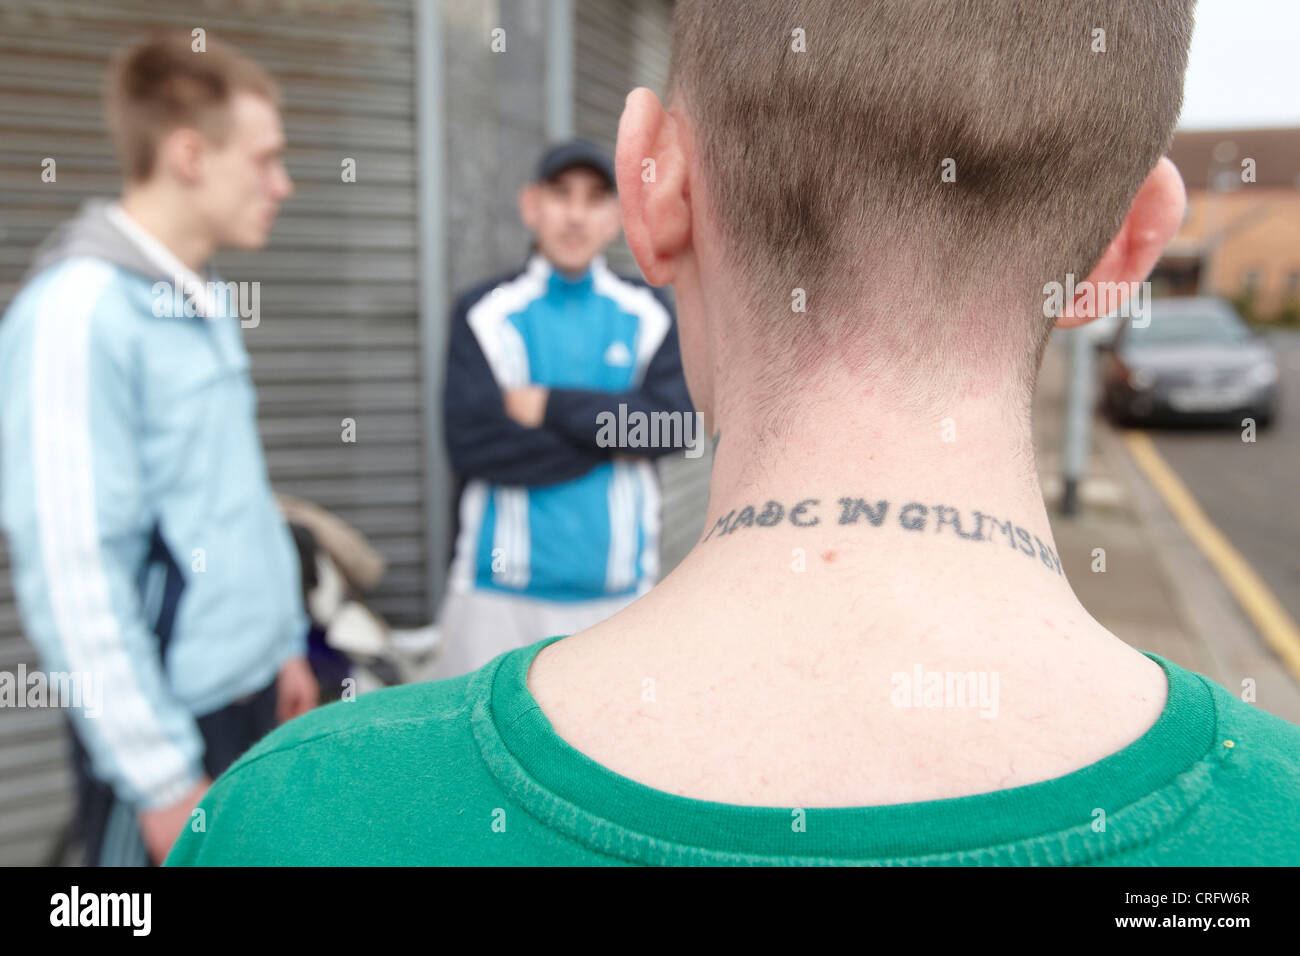 Les jeunes hommes sur une rue avec Made in Grimsby tatoué sur son cou, Freeman Street, Grimsby, Lincolnshire, Angleterre, Royaume-Uni. Banque D'Images